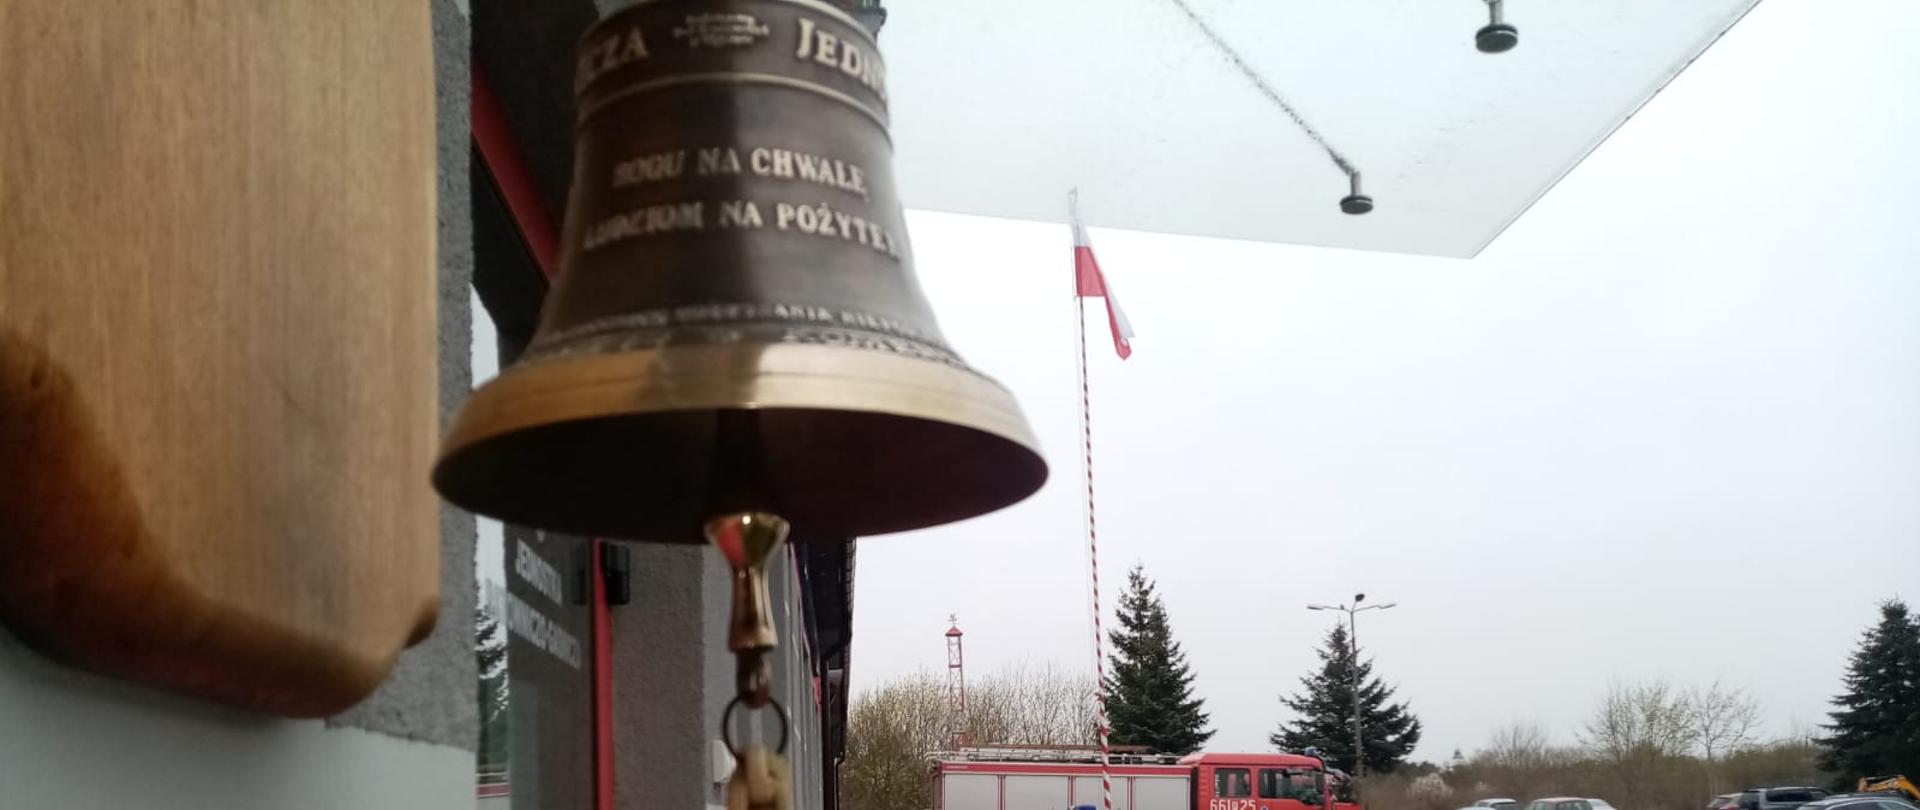 Podniesienie flagi na terenie Komendy Powiatowej Państwowej Straży Pożarnej w Złotowie 